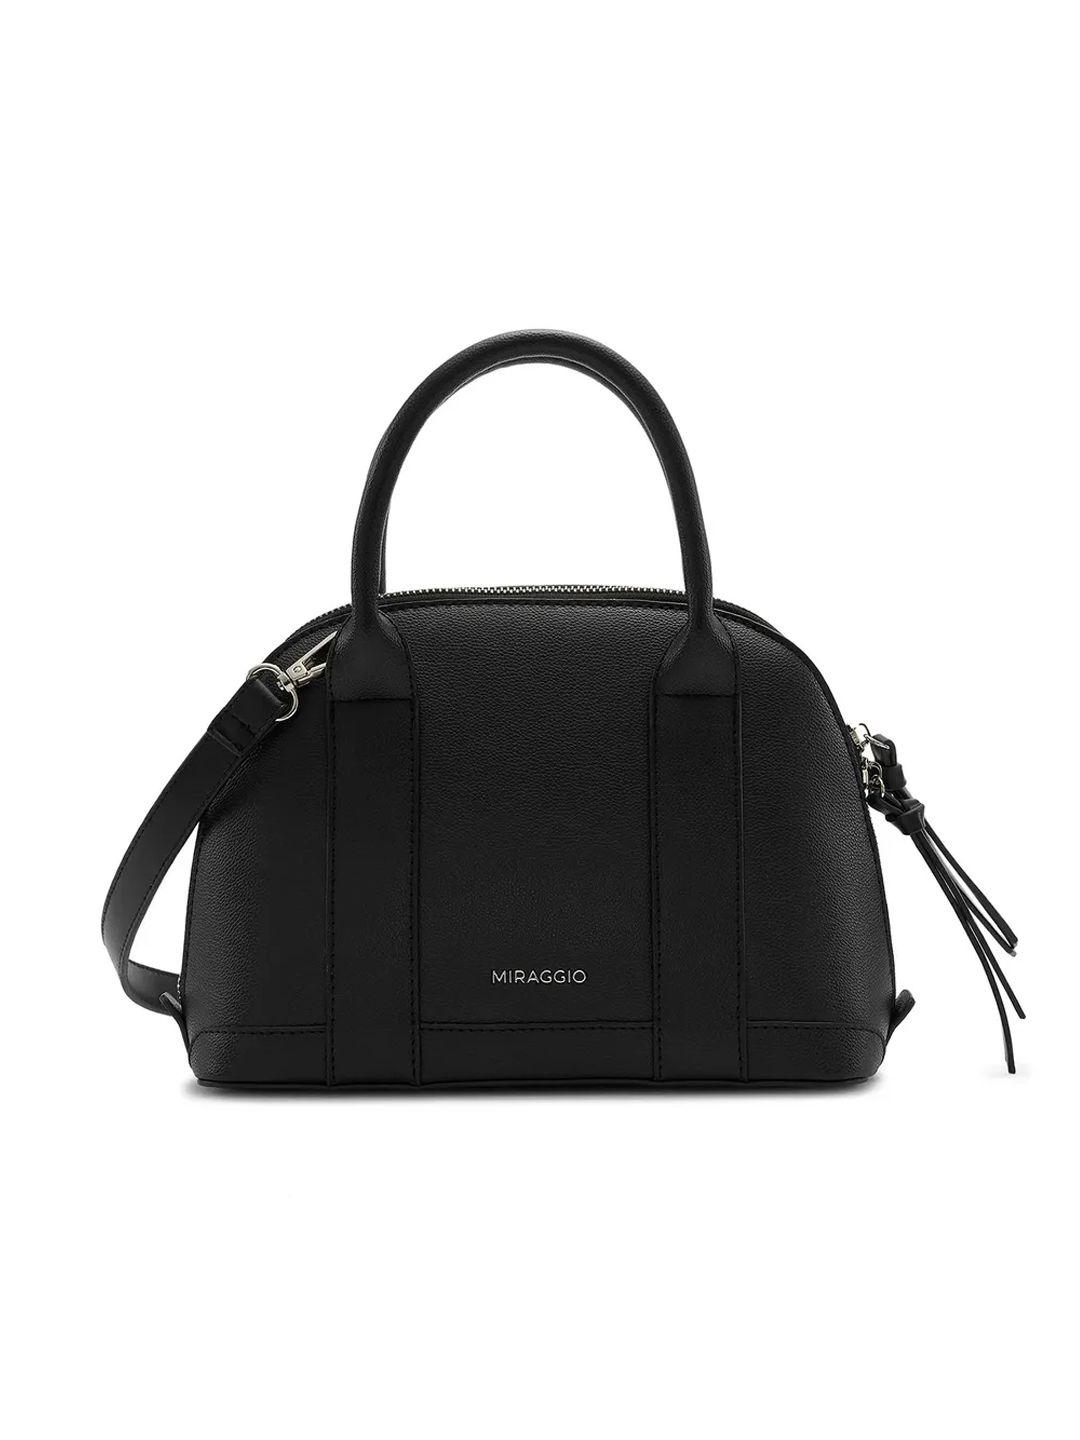 miraggio black dome satchel handbag with sling strap